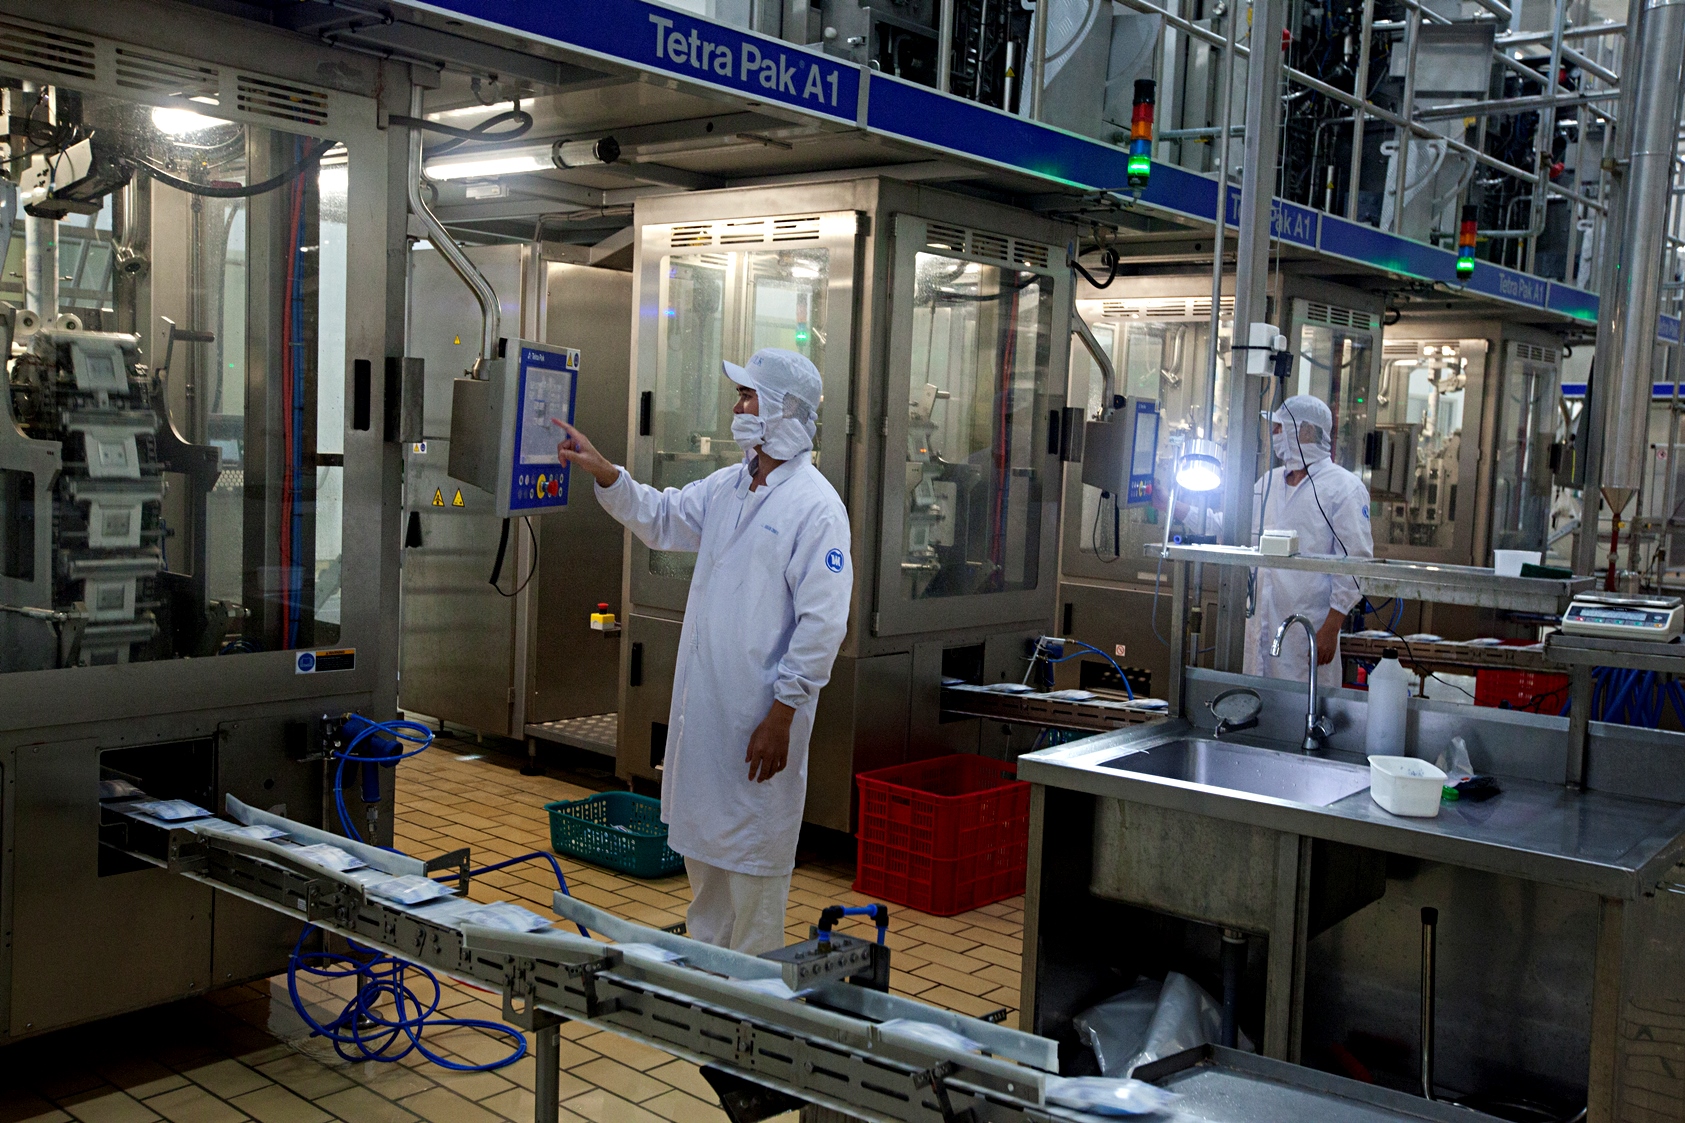 Nhà máy Sữa Việt Nam của Vinamilk được trang bị dây chuyền sản xuất sữa tươi tiệt trùng với thiết bị hiện đại và công nghệ sản xuất tiên tiến hàng đầu hiện nay. Nhà máy hoạt động trên một dây chuyền tự động, khép kín, từ khâu nguyên liệu đầu vào đến đầu ra sản phẩm.